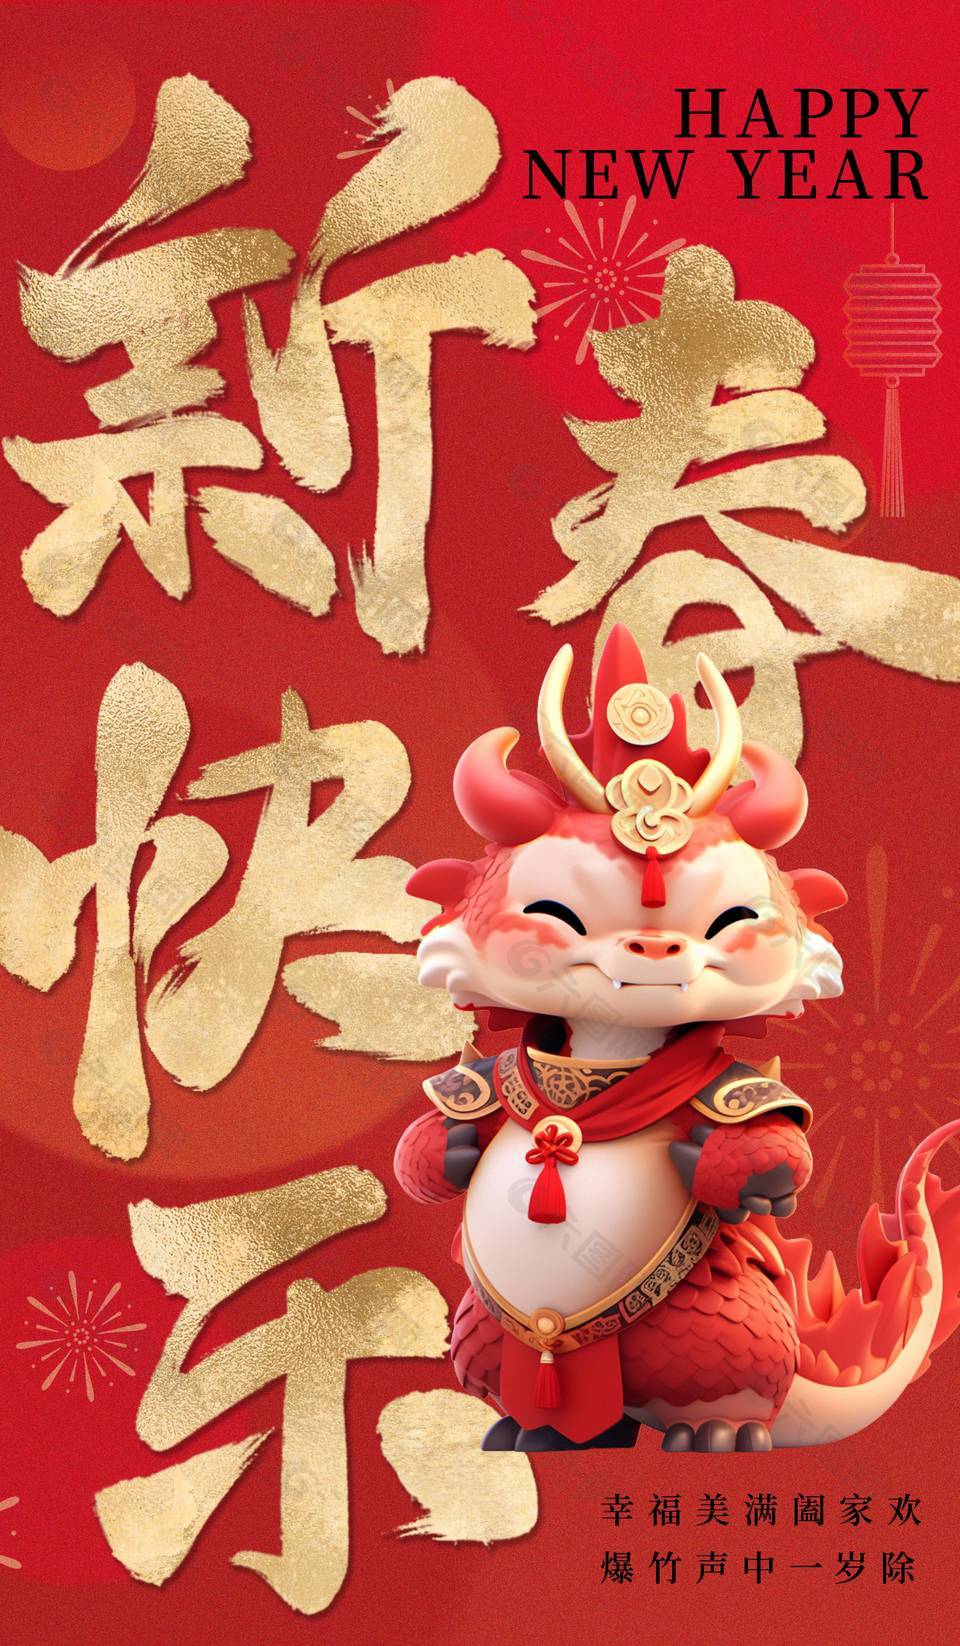 新春快乐卡通龙年形象红色节日海报下载